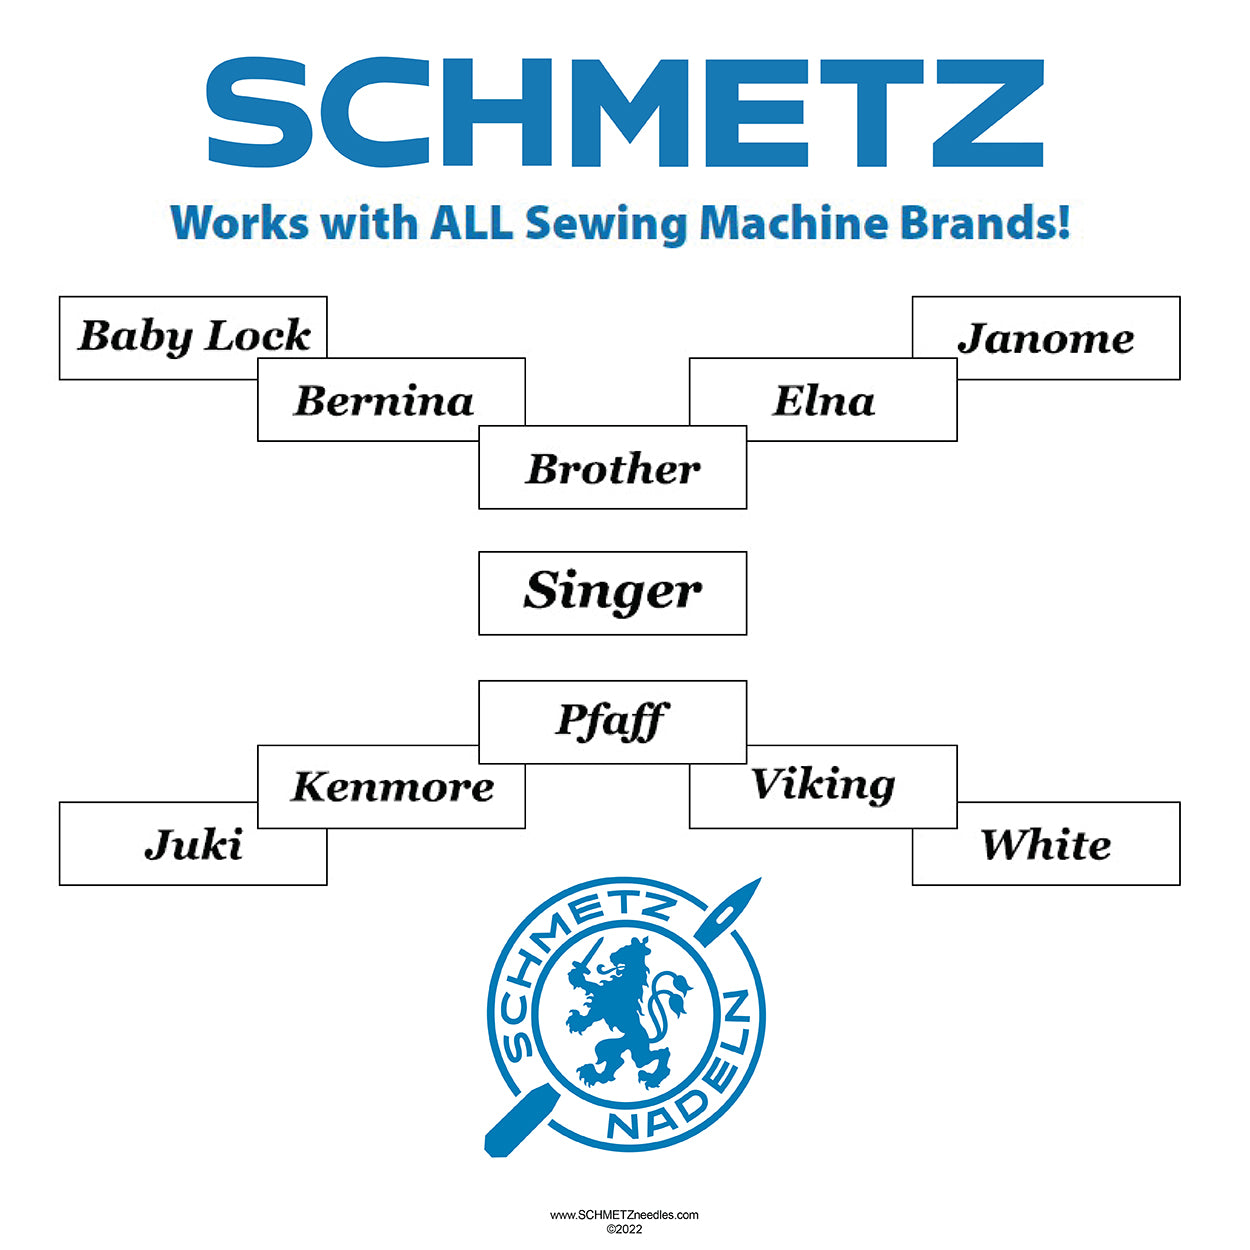 Does SCHMETZ Work With My Machine?